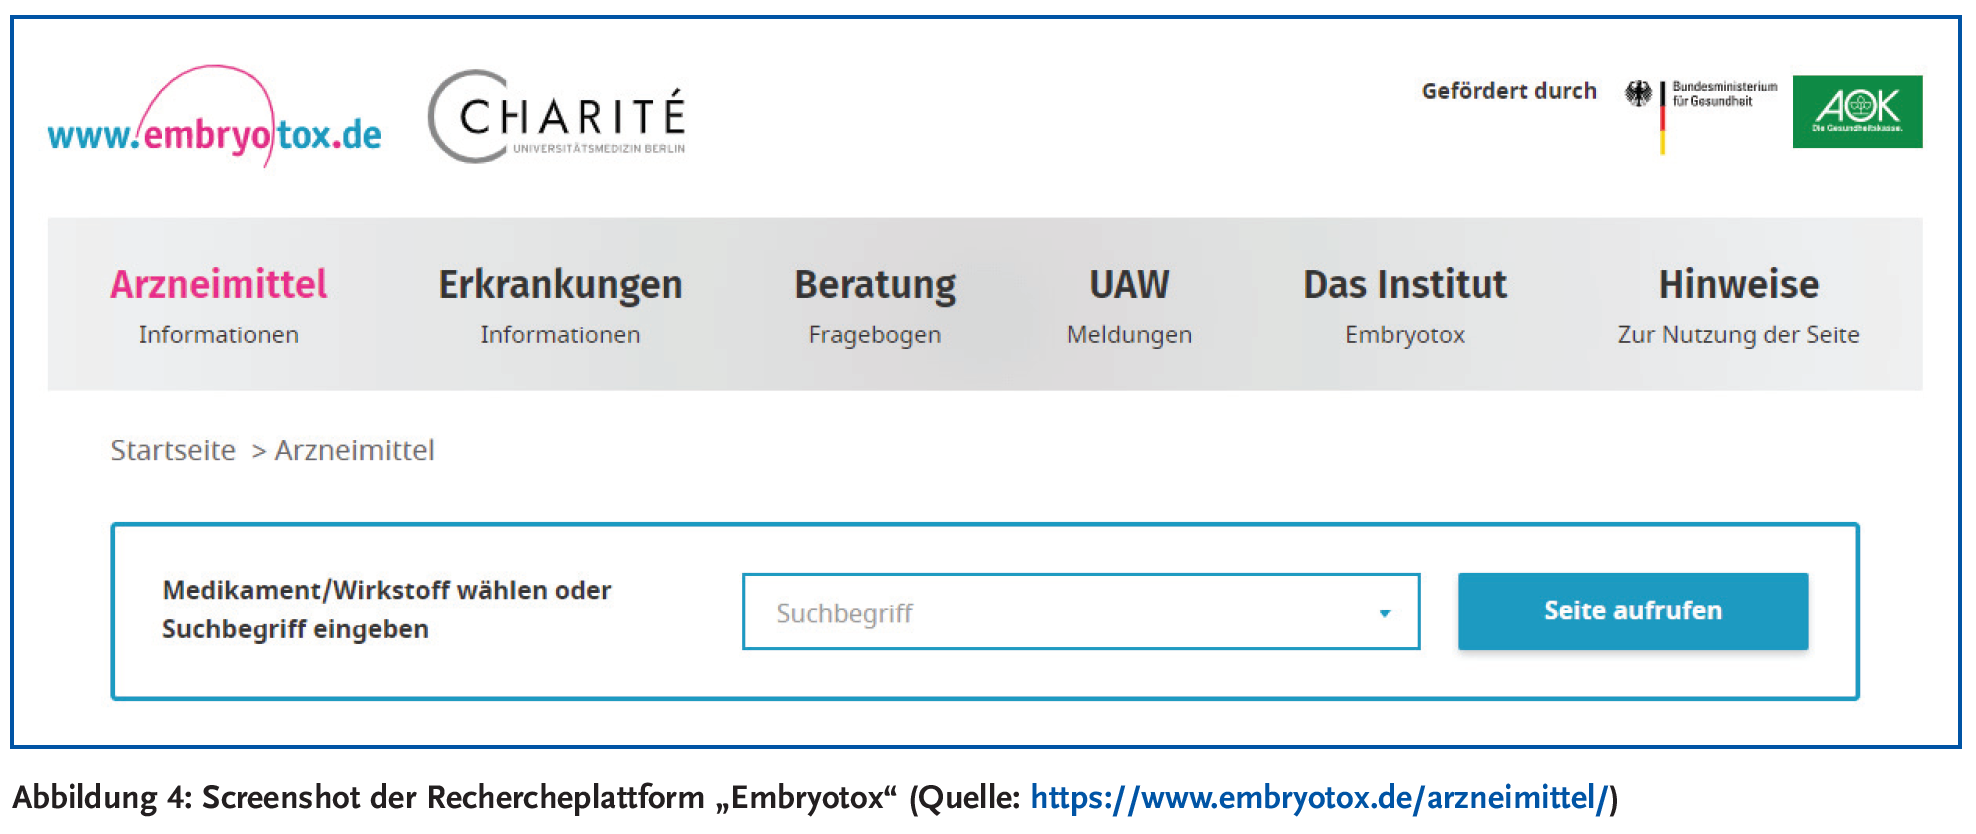 Abbildung 4: Screenshot der Rechercheplattform „Embryotox“ (Quelle: https://www.embryotox.de/arzneimittel/)